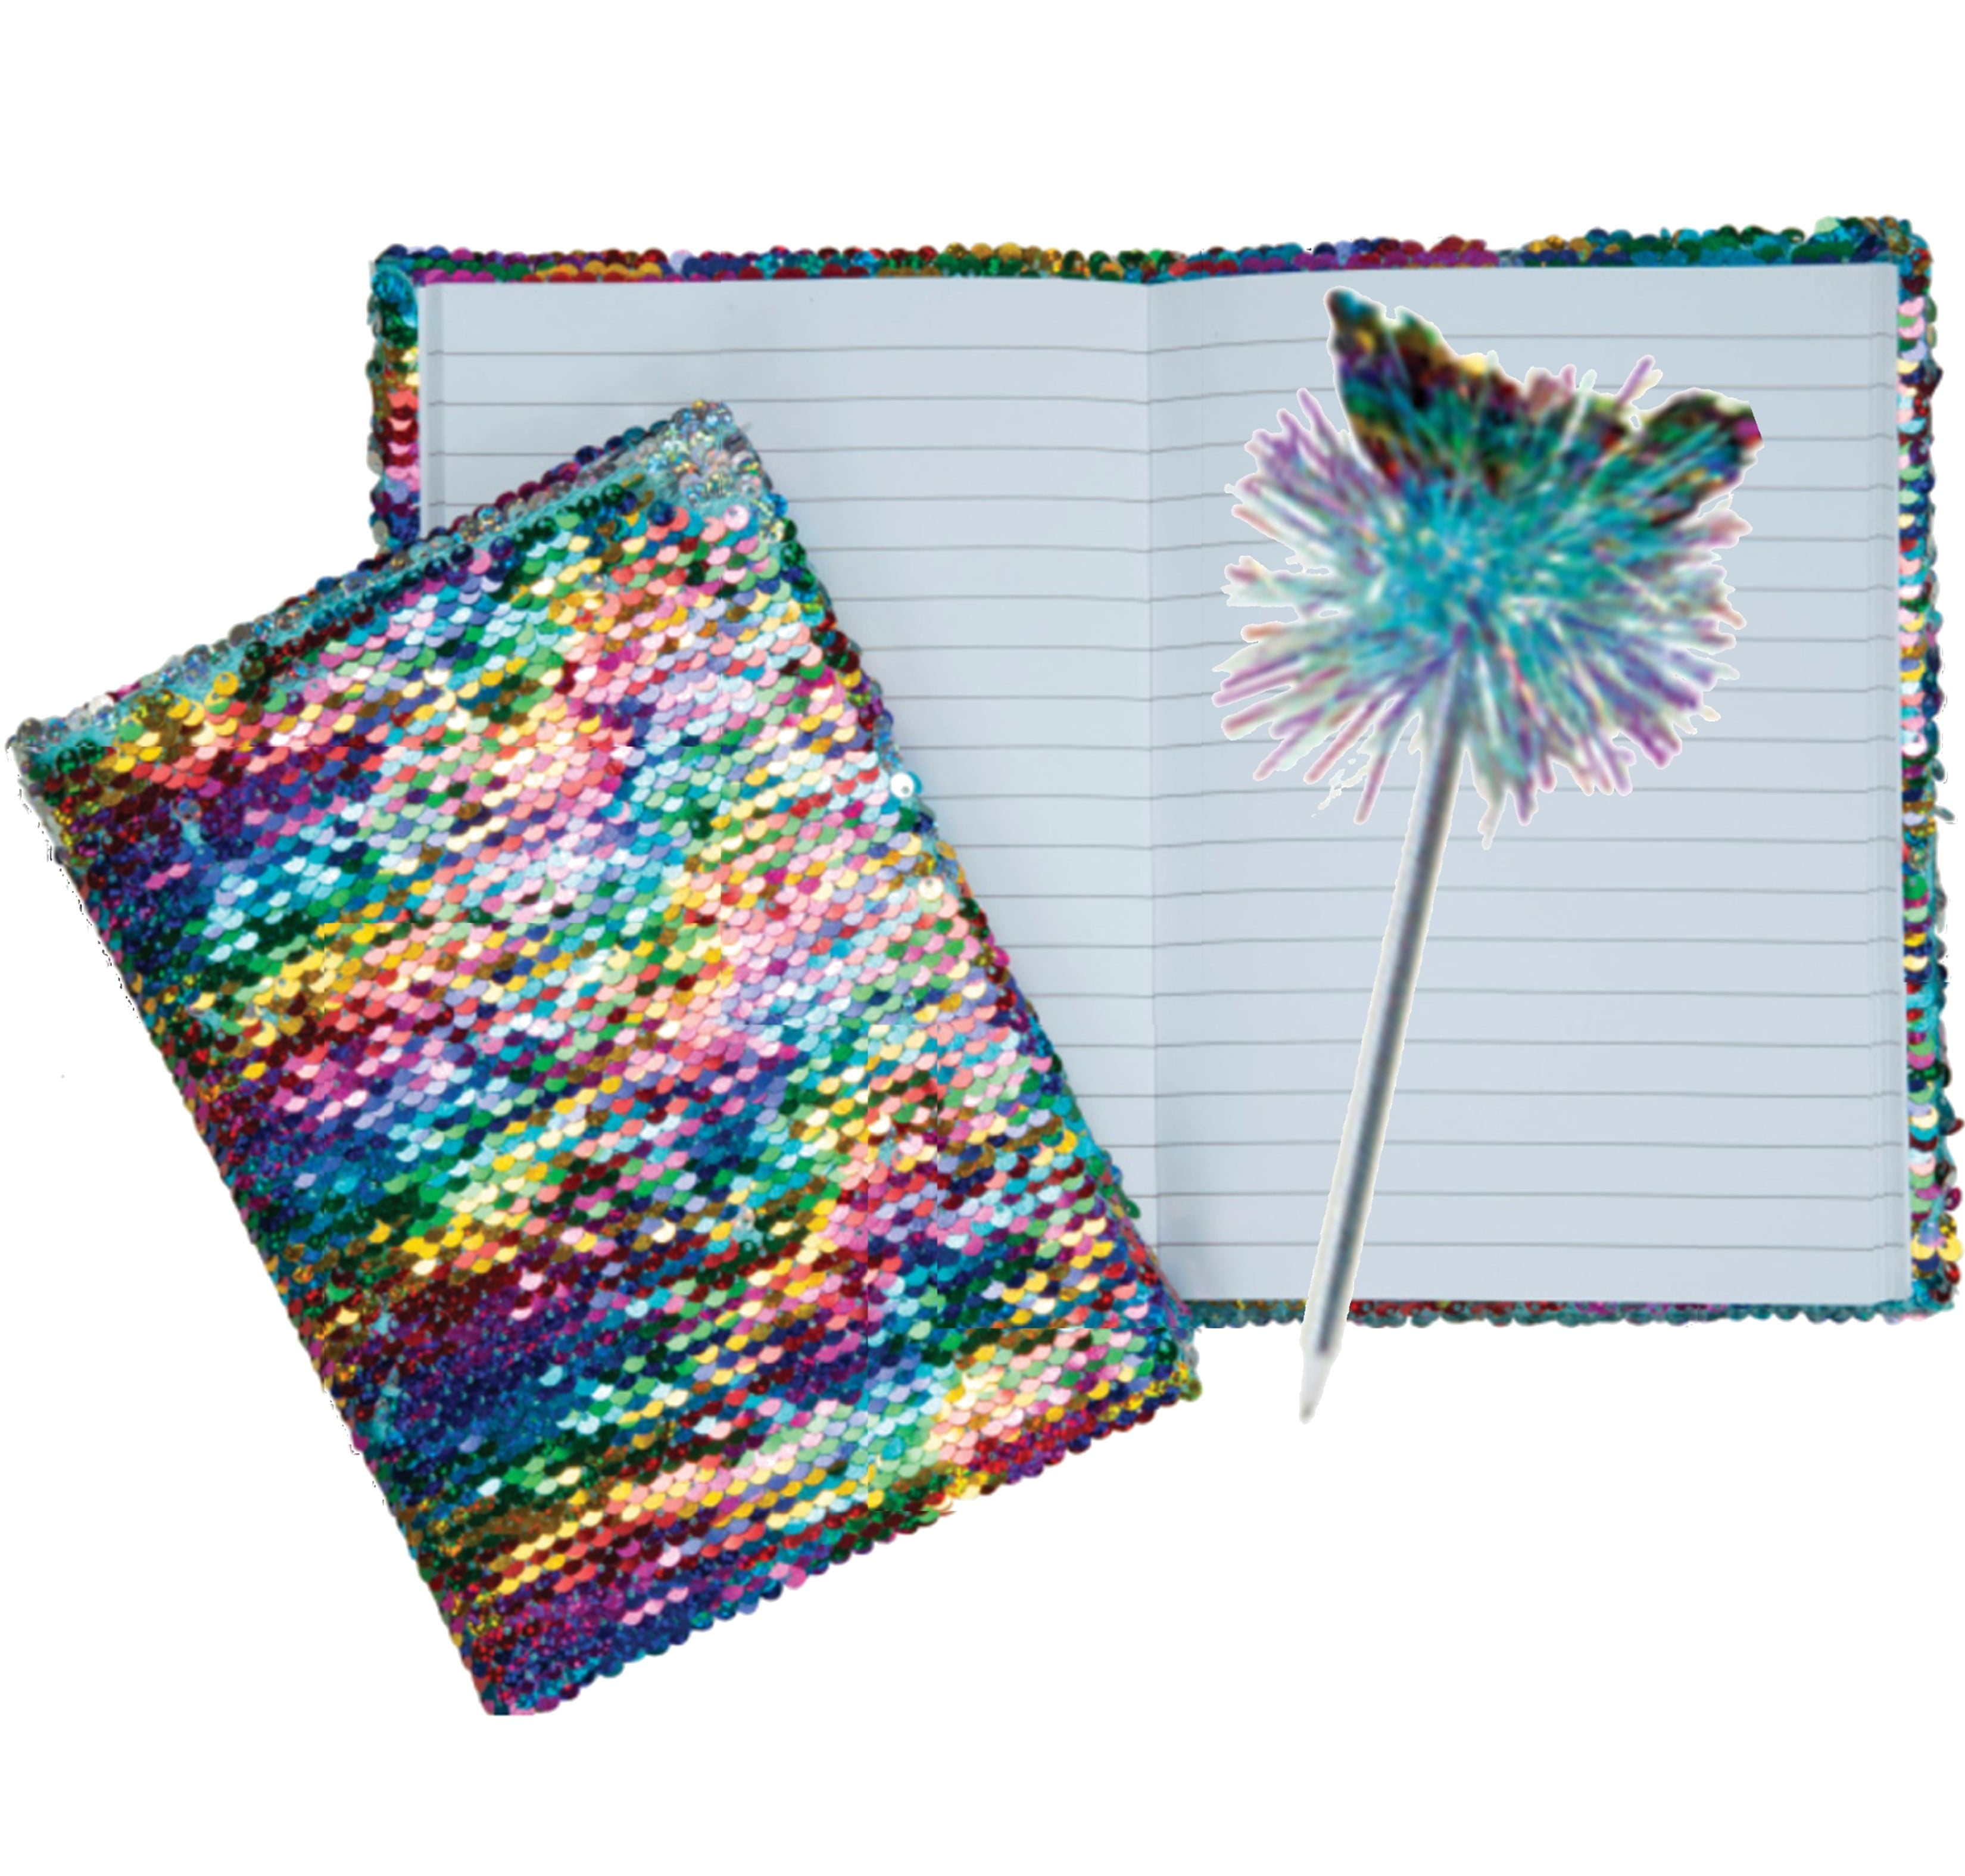  Mermaid DIY Journal Kit for Girls, 100+PCS Sequin